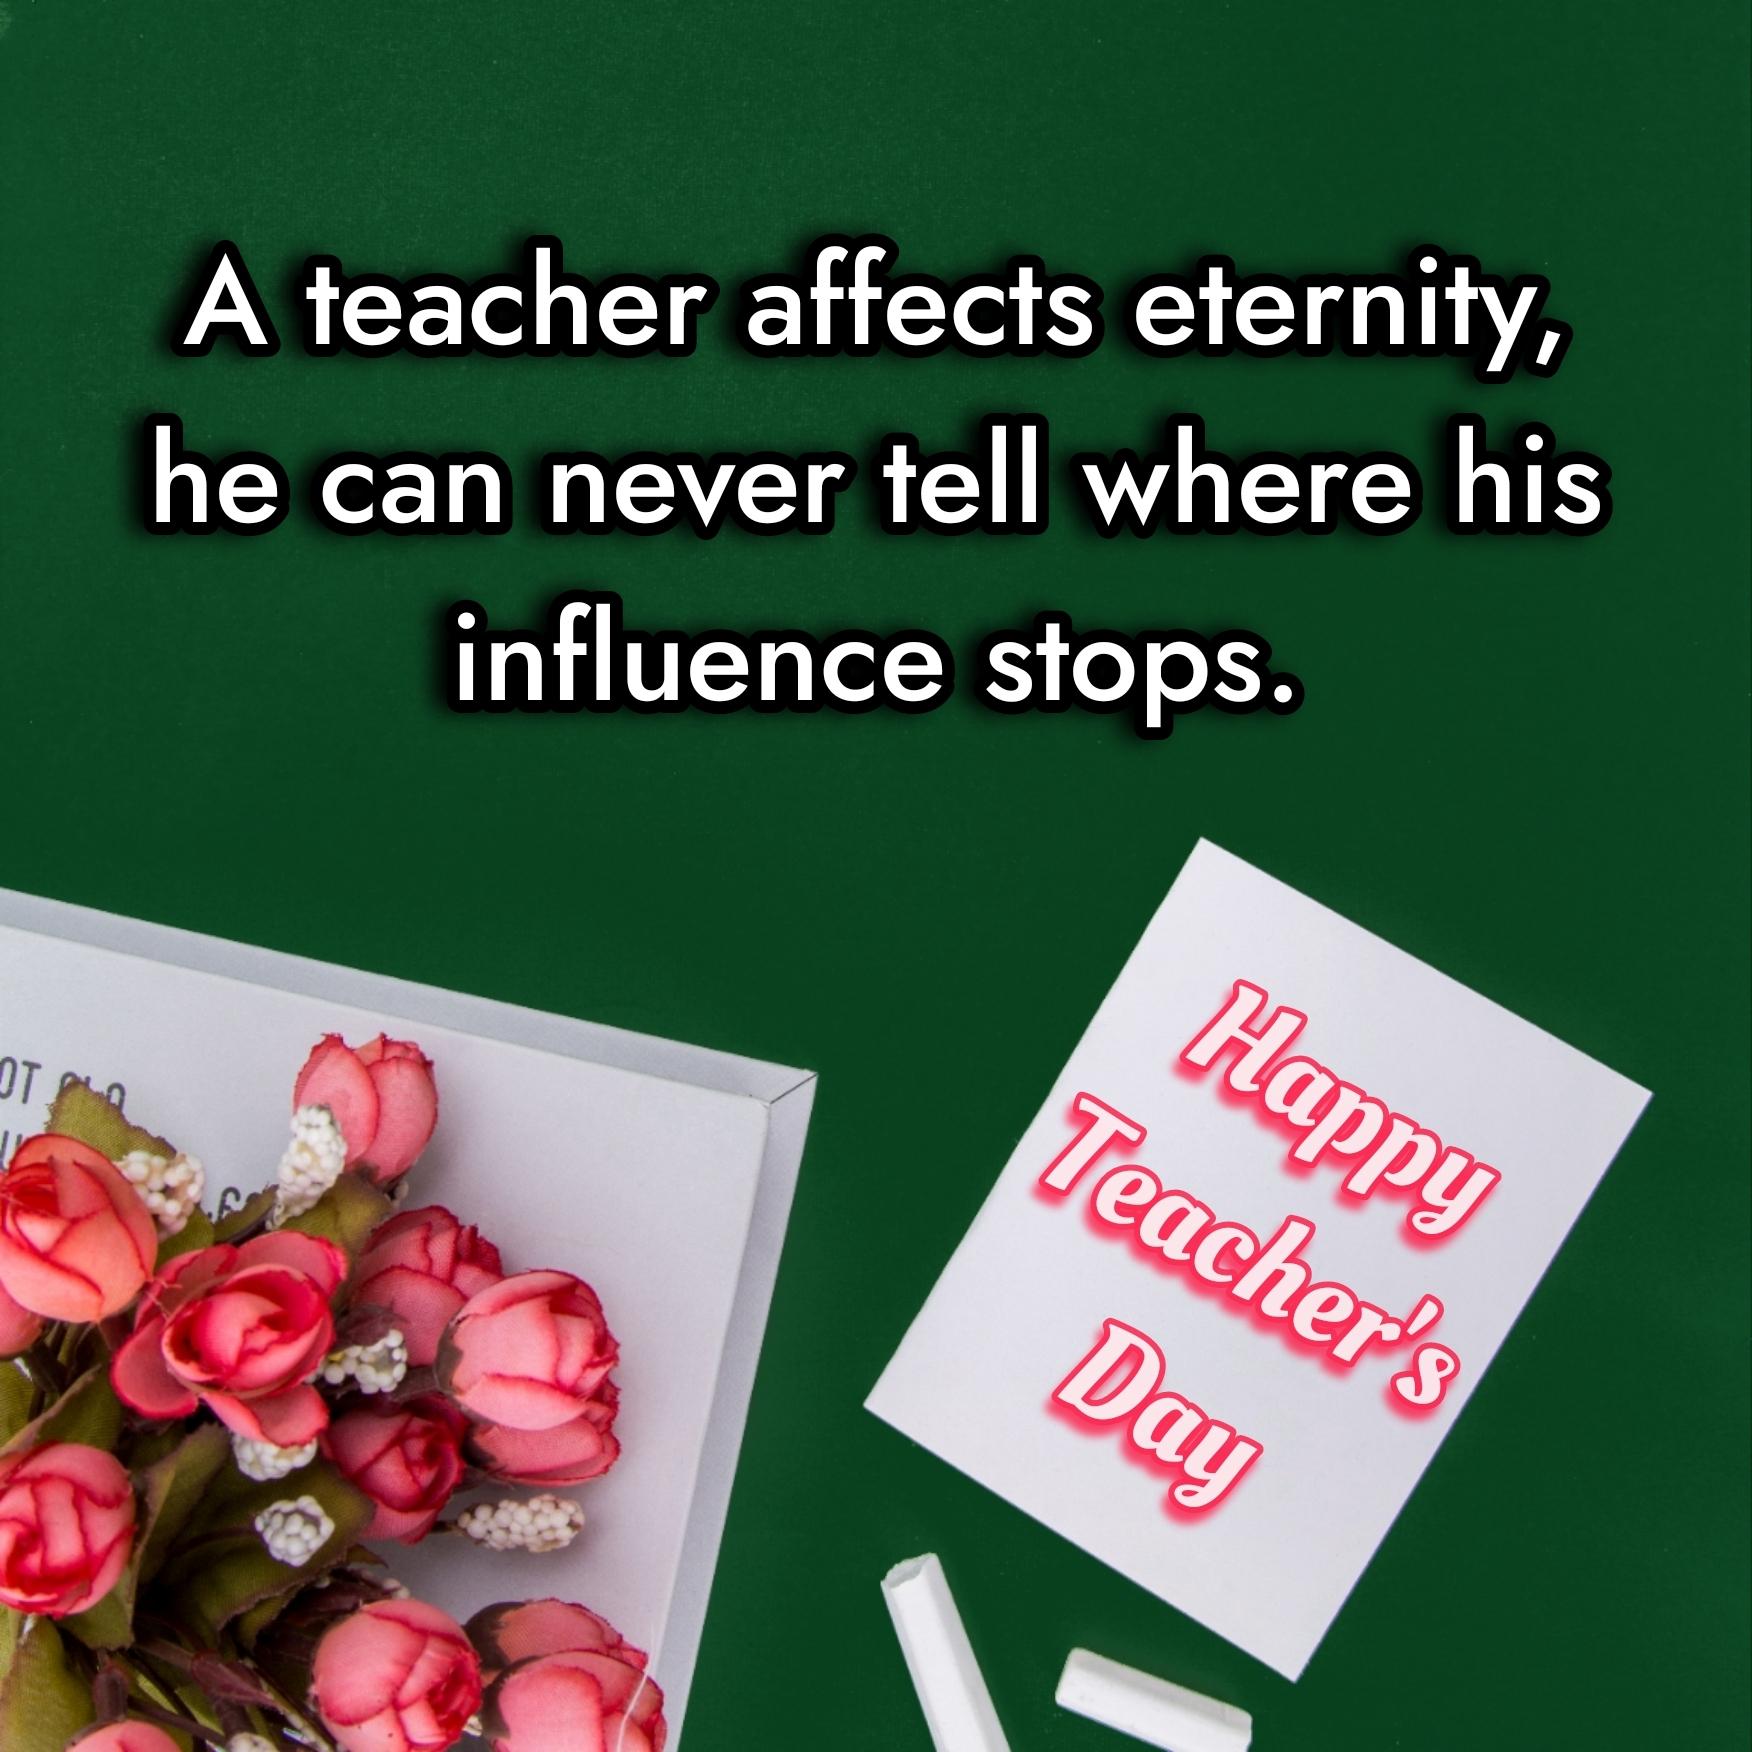 A teacher affects eternity